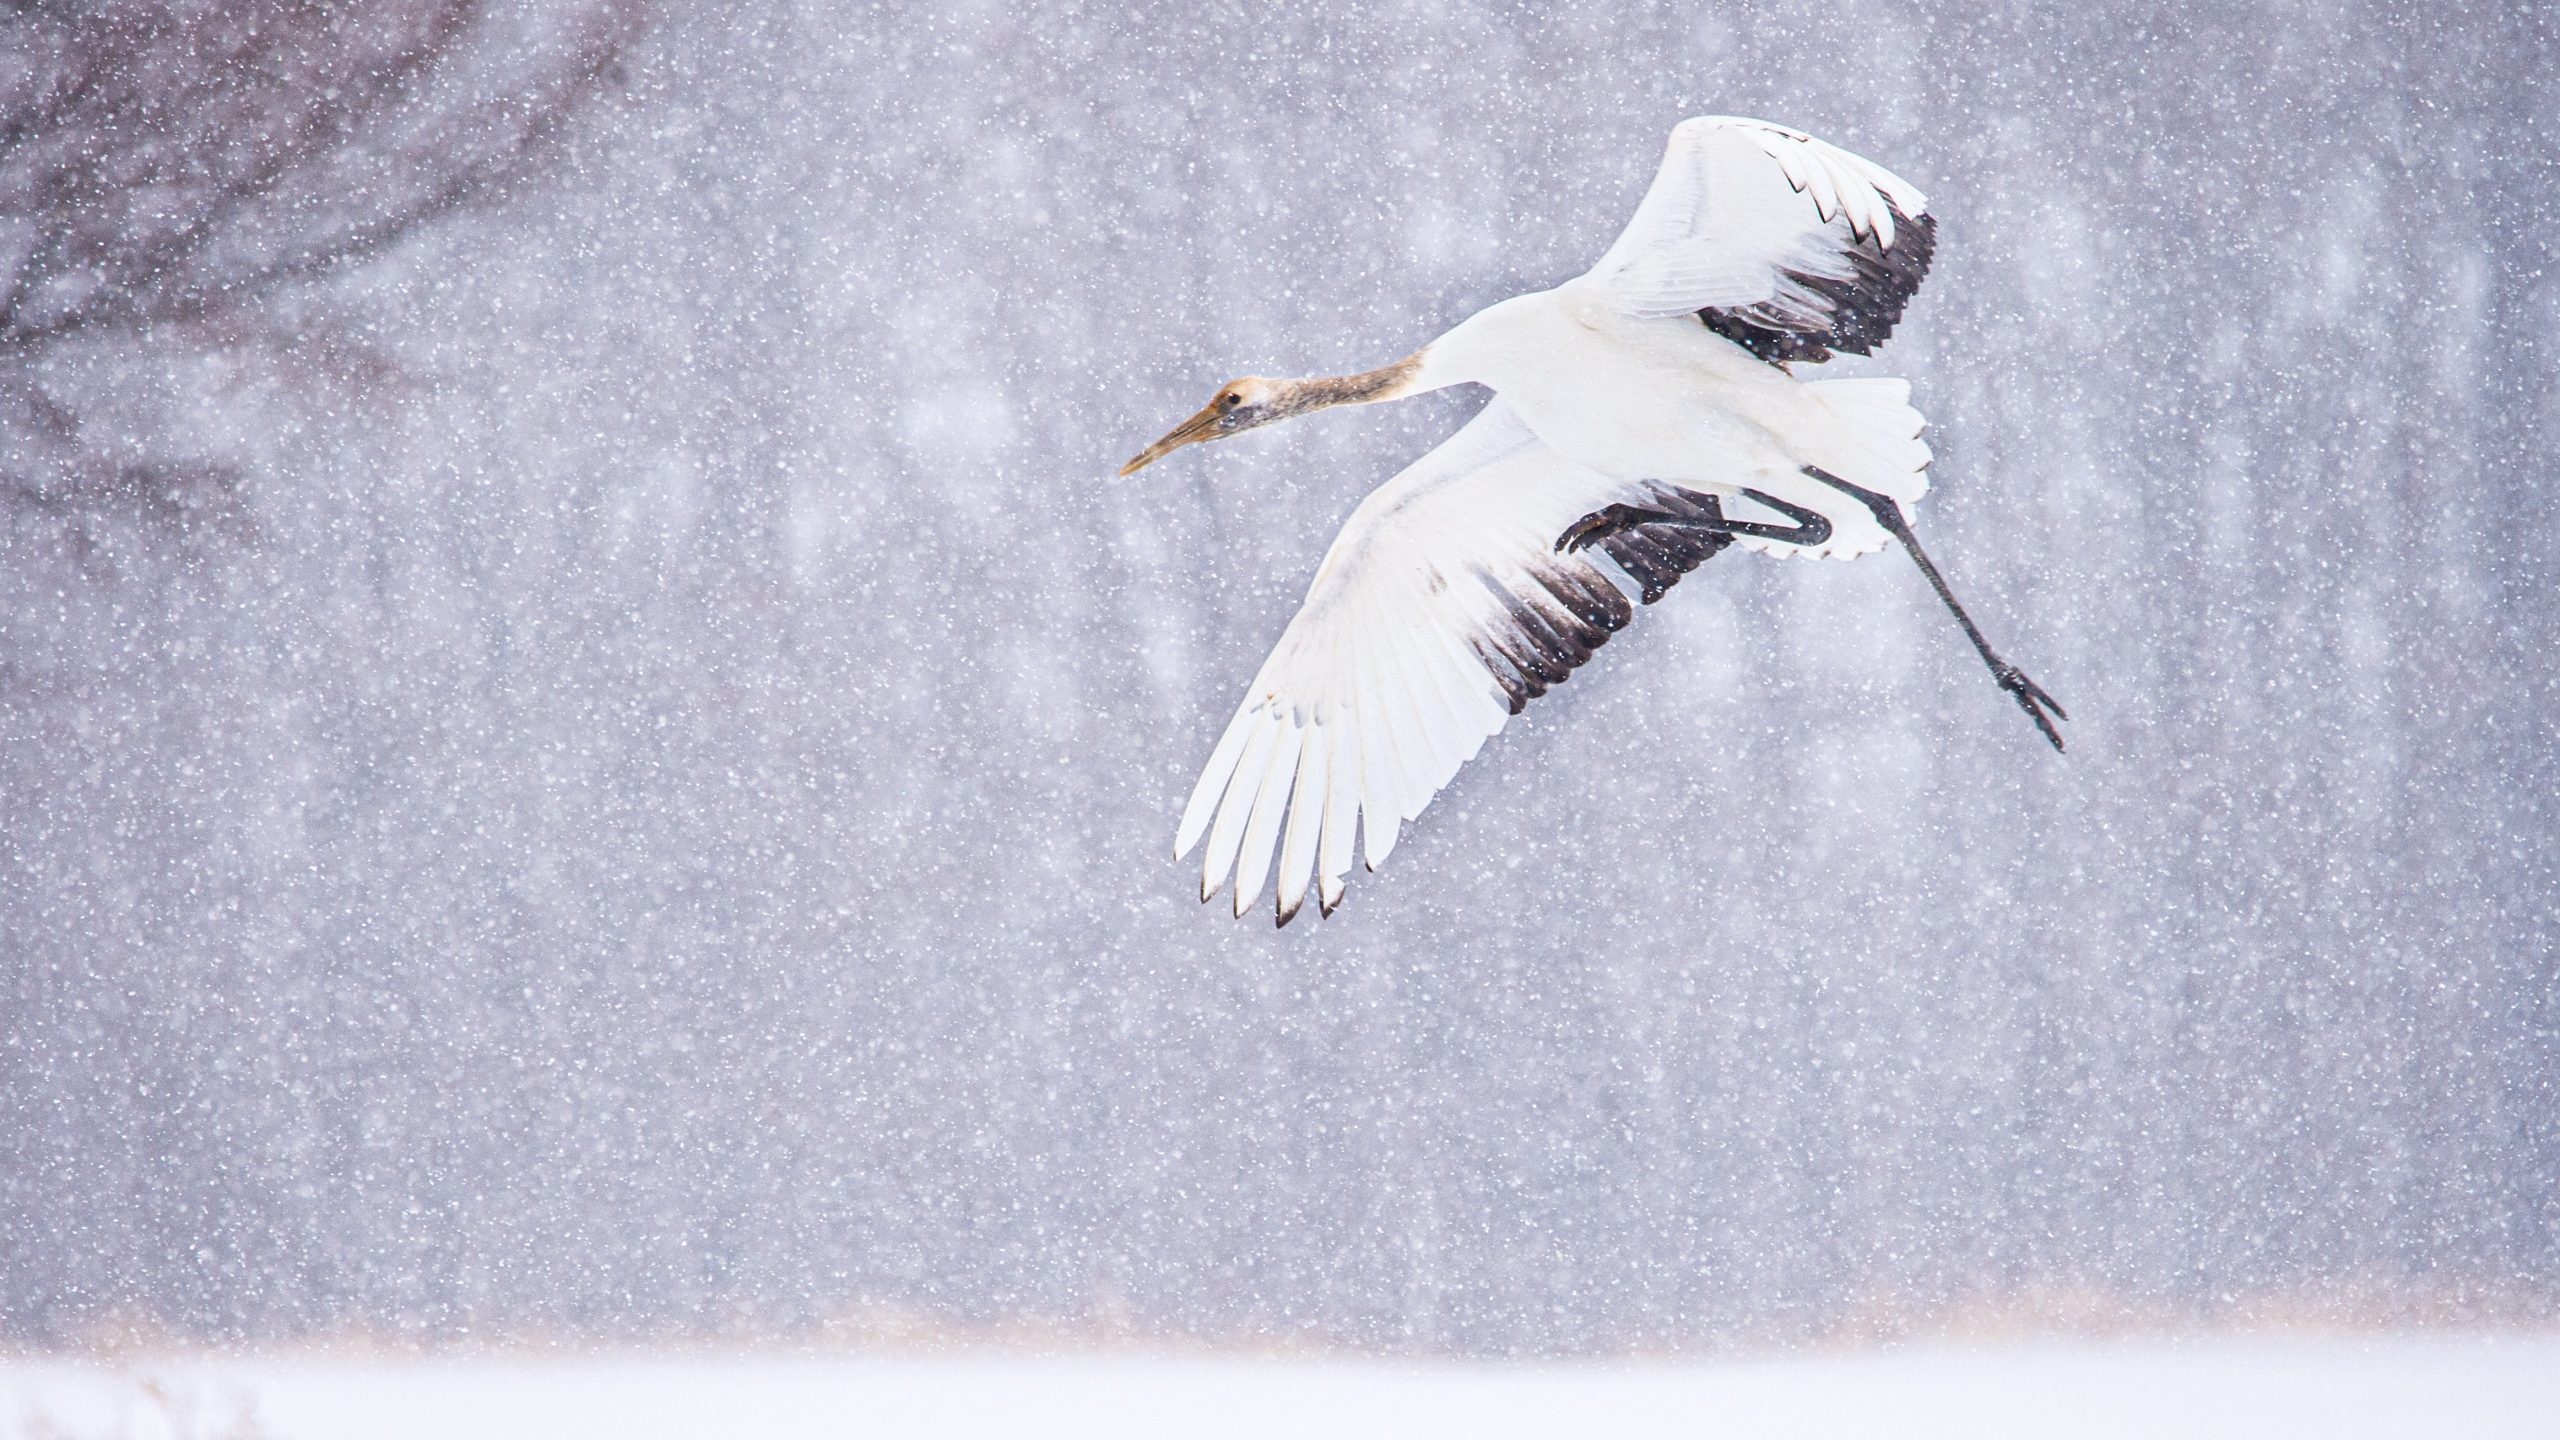 Juvenile crane, HD wallpaper, High definition image, Bird wallpapers, 2560x1440 HD Desktop